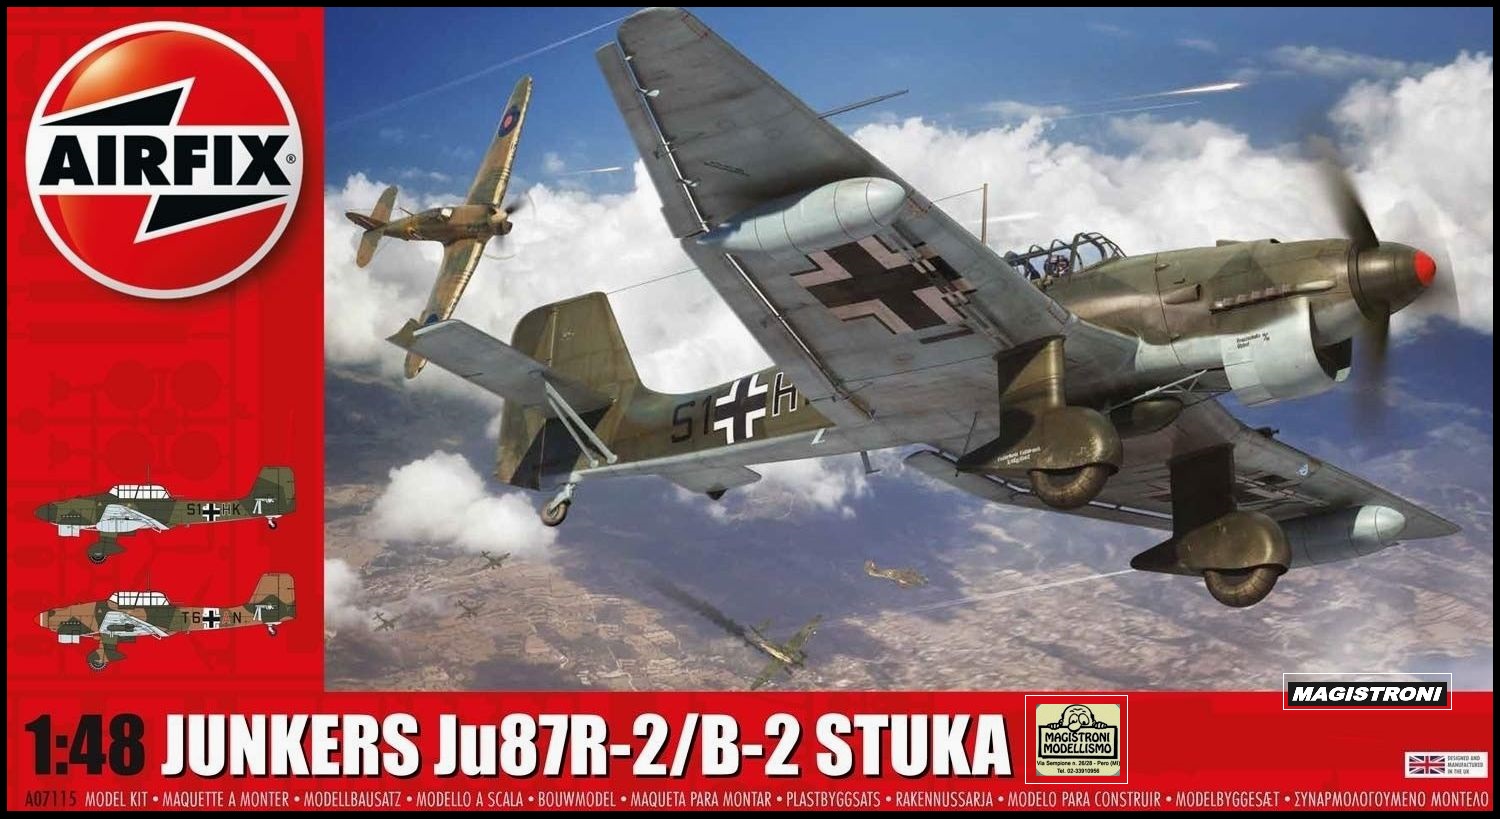 JUNKERS Ju87R/B-2 STUKA